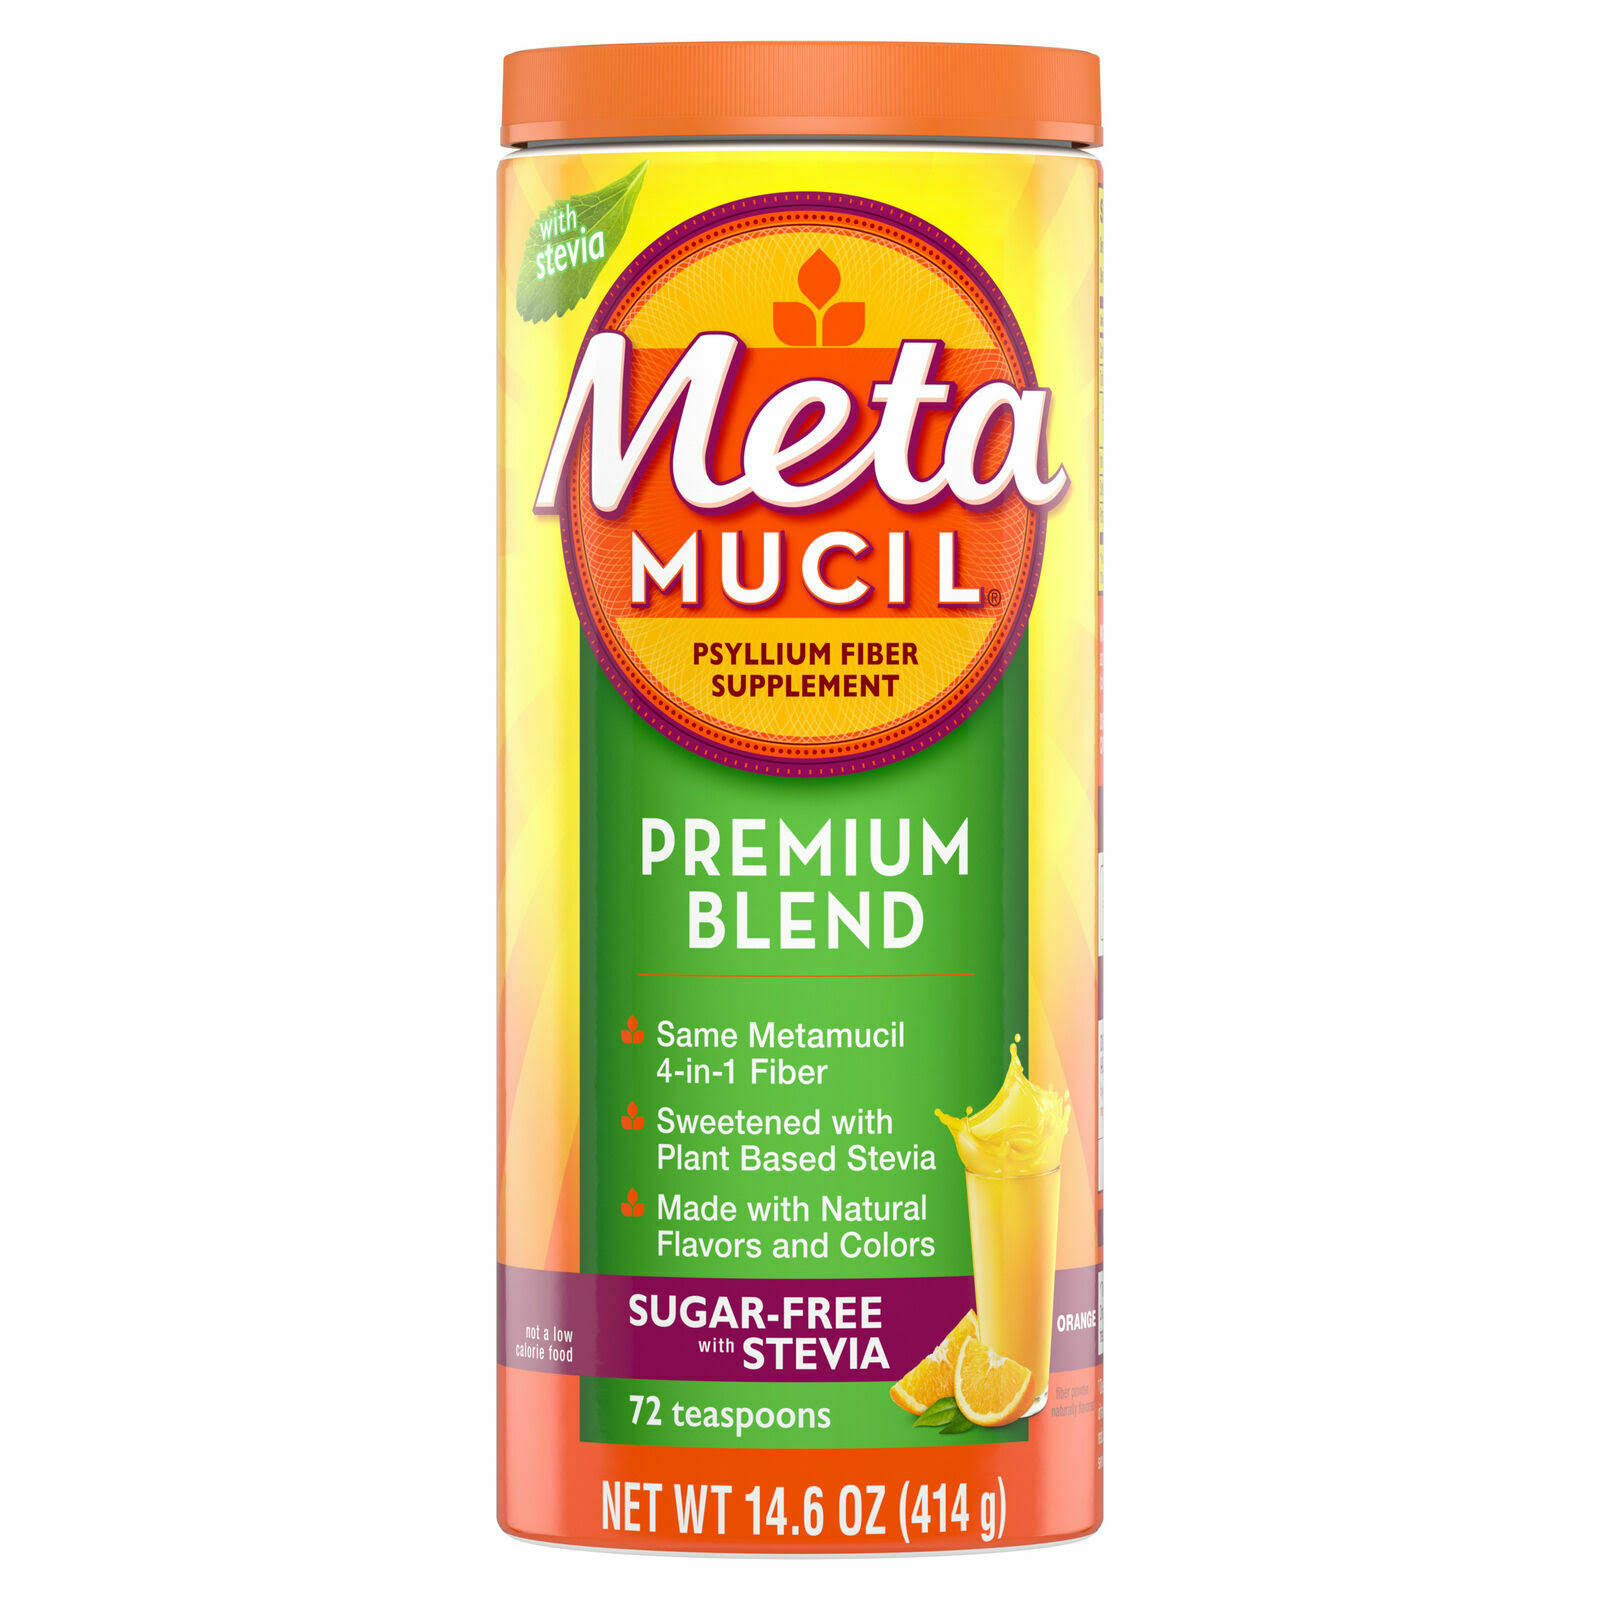 Metamucil Premium Blend Fiber Powder Supplement - Orange, 72 Servings